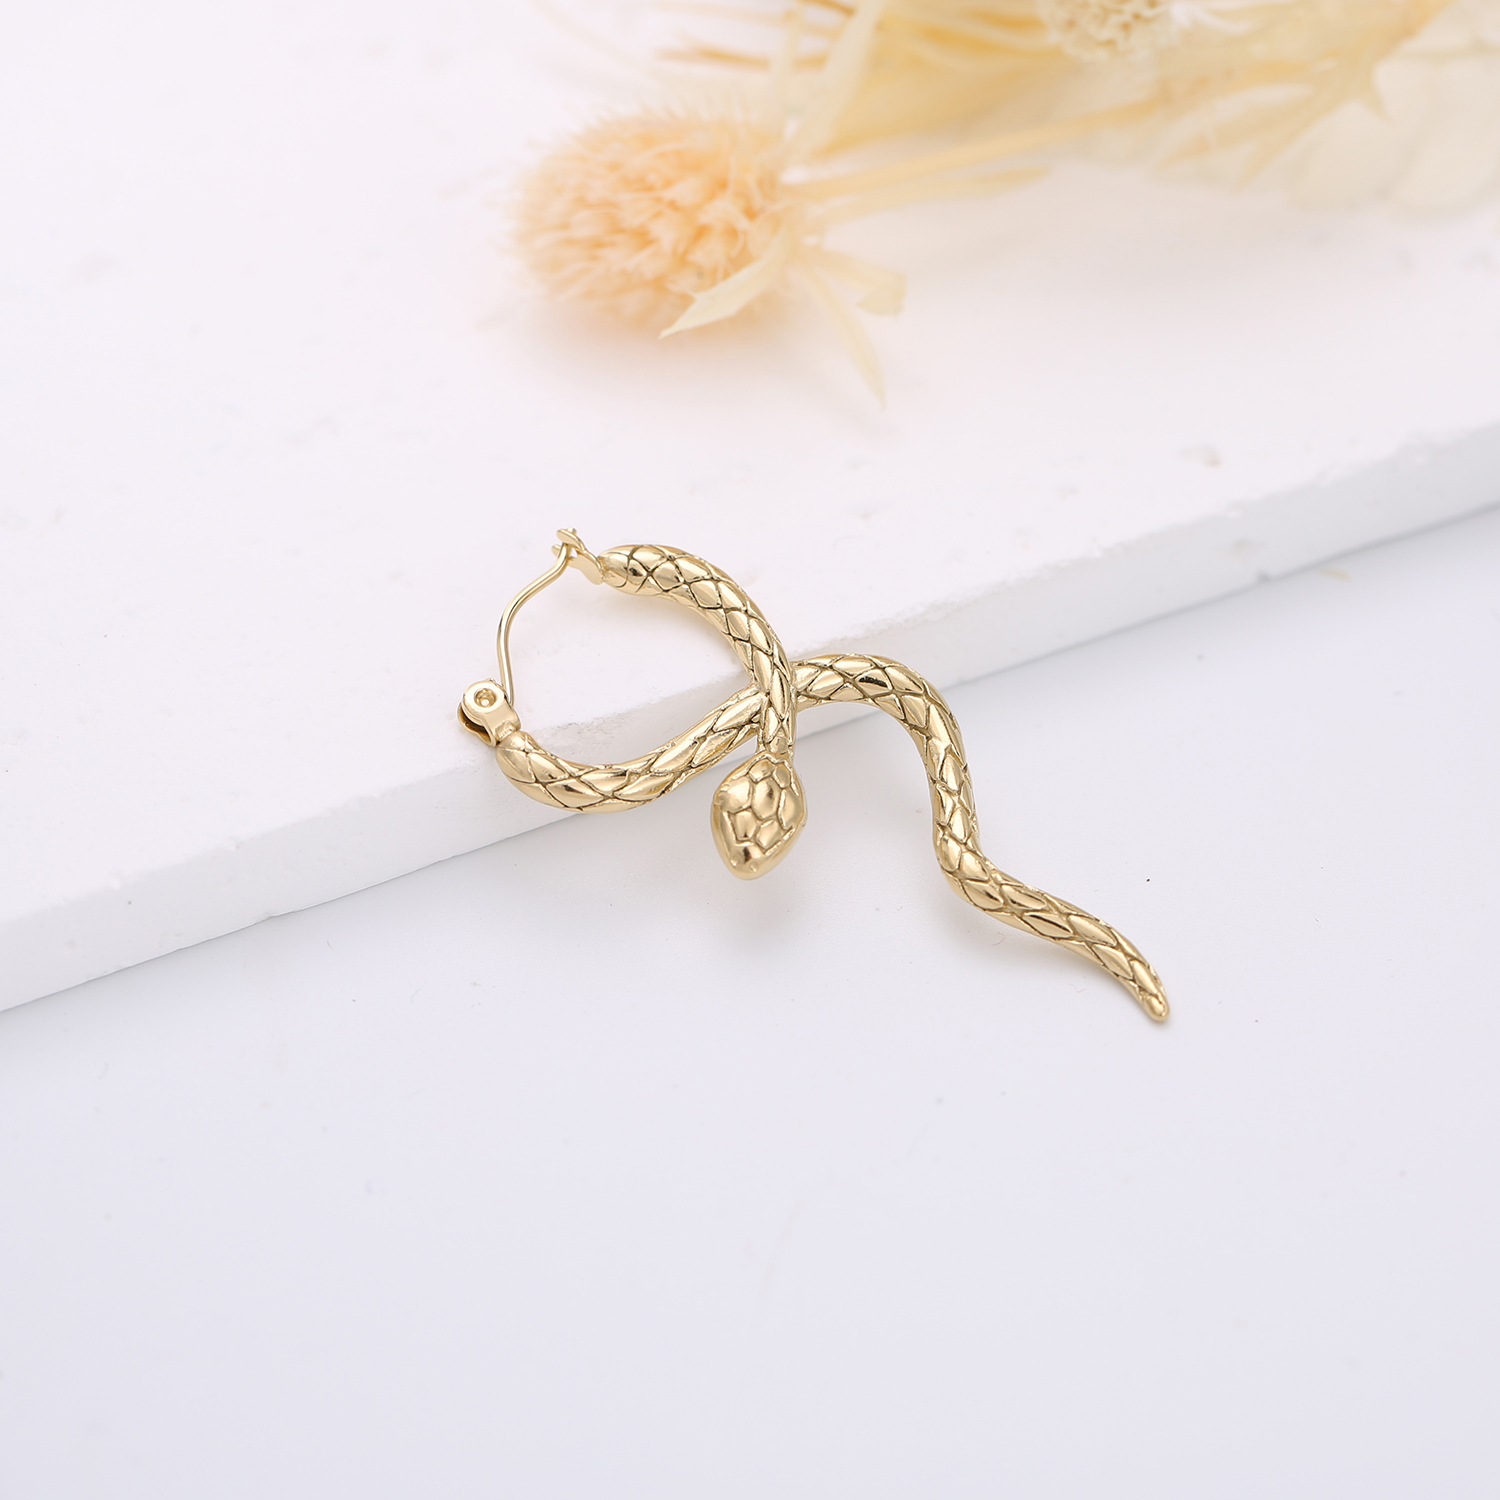 Стильные уникальные серьги-кольца из нержавеющей стали со змеей, эффектные водостойкие очаровательные ювелирные изделия с PVD-покрытием золотого цвета